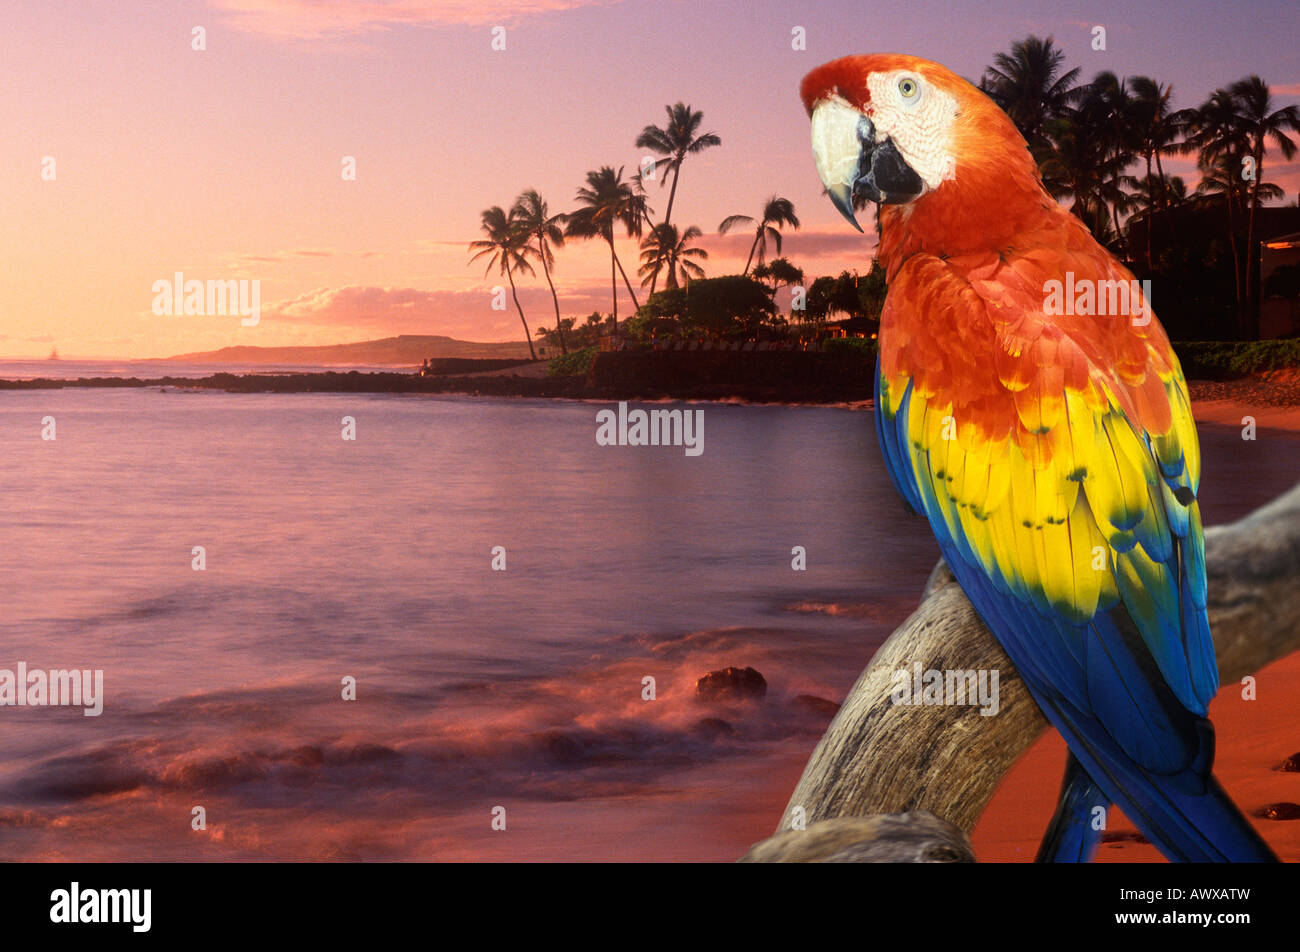 Composito immagine panoramica di un pappagallo colorato e la fascia costiera in Hawaii al tramonto Foto Stock